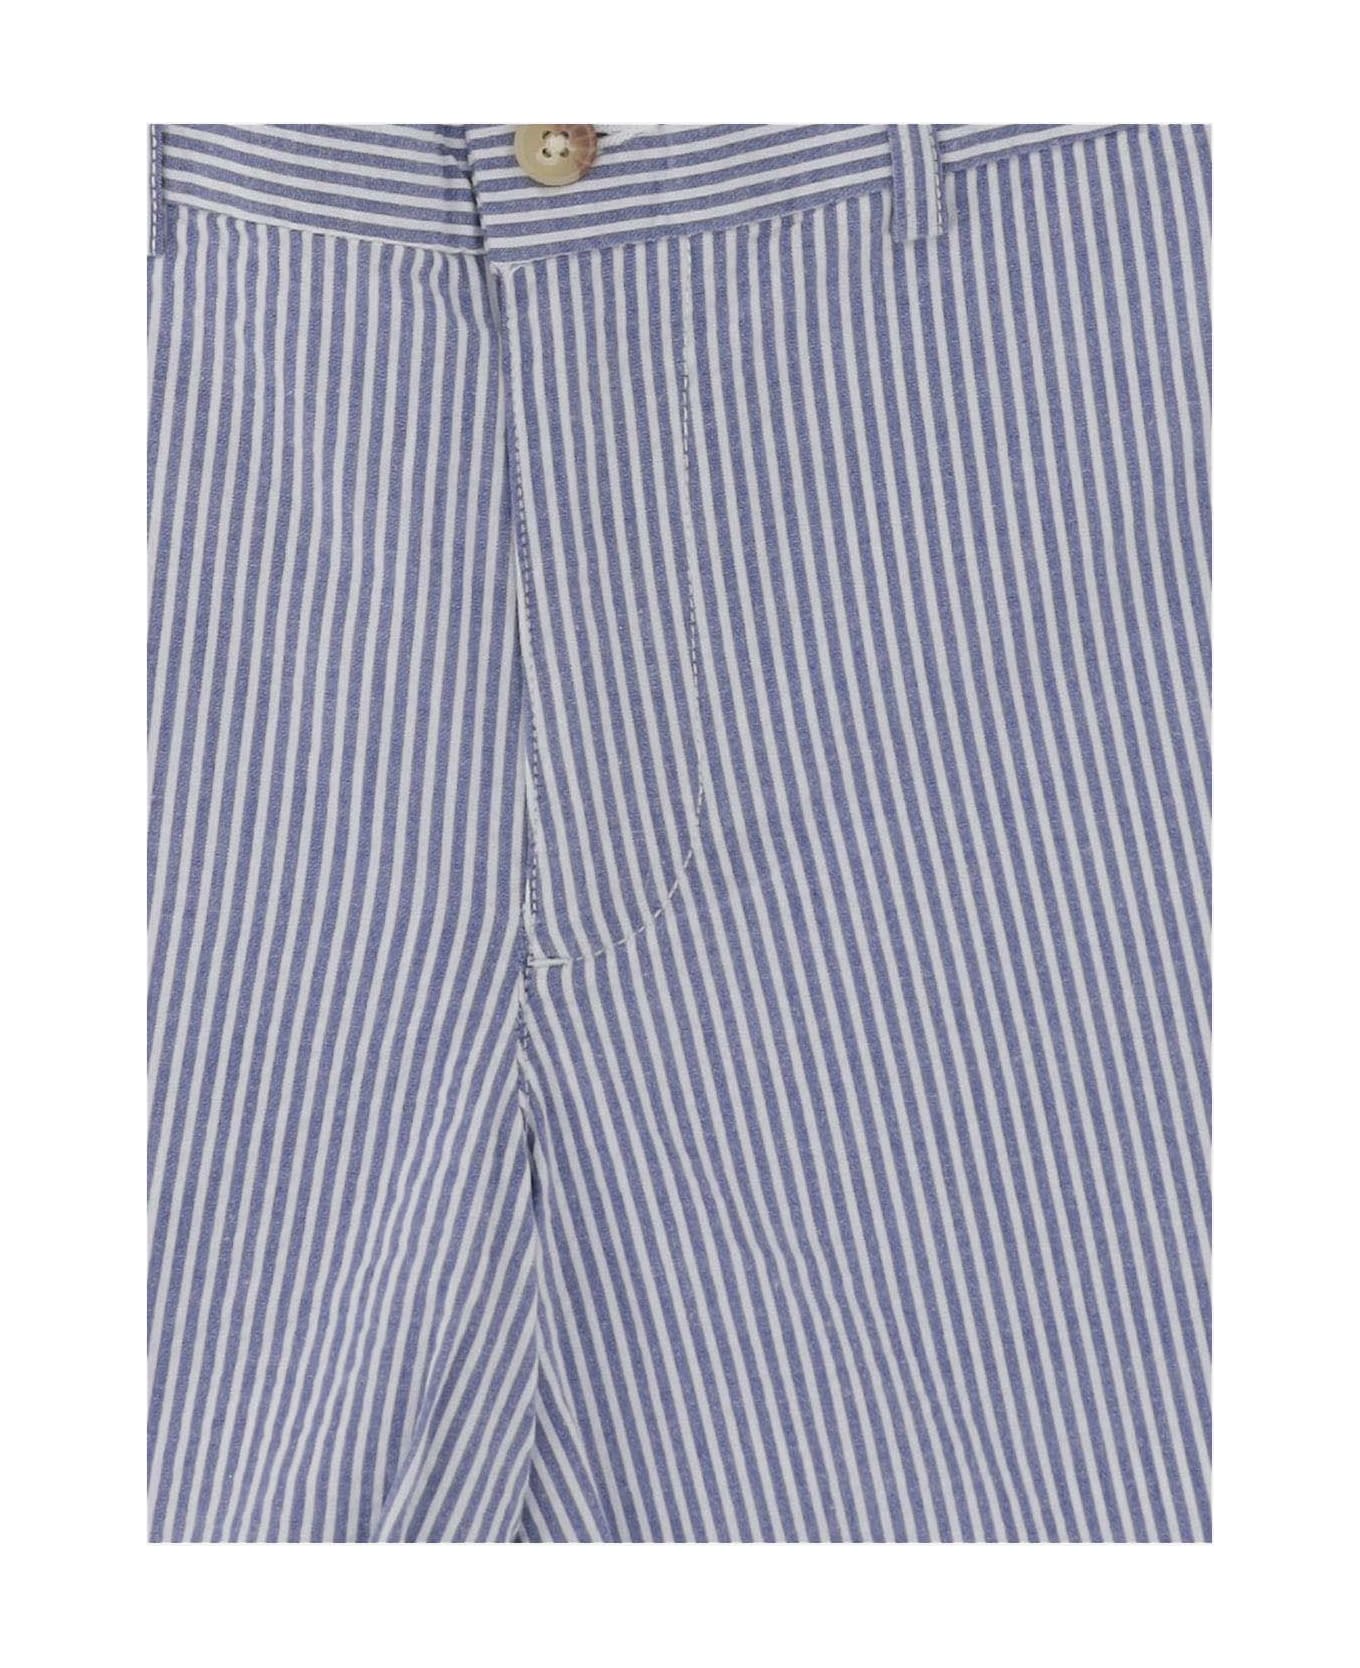 Polo Ralph Lauren Striped Stretch Cotton Short Pants - Blue